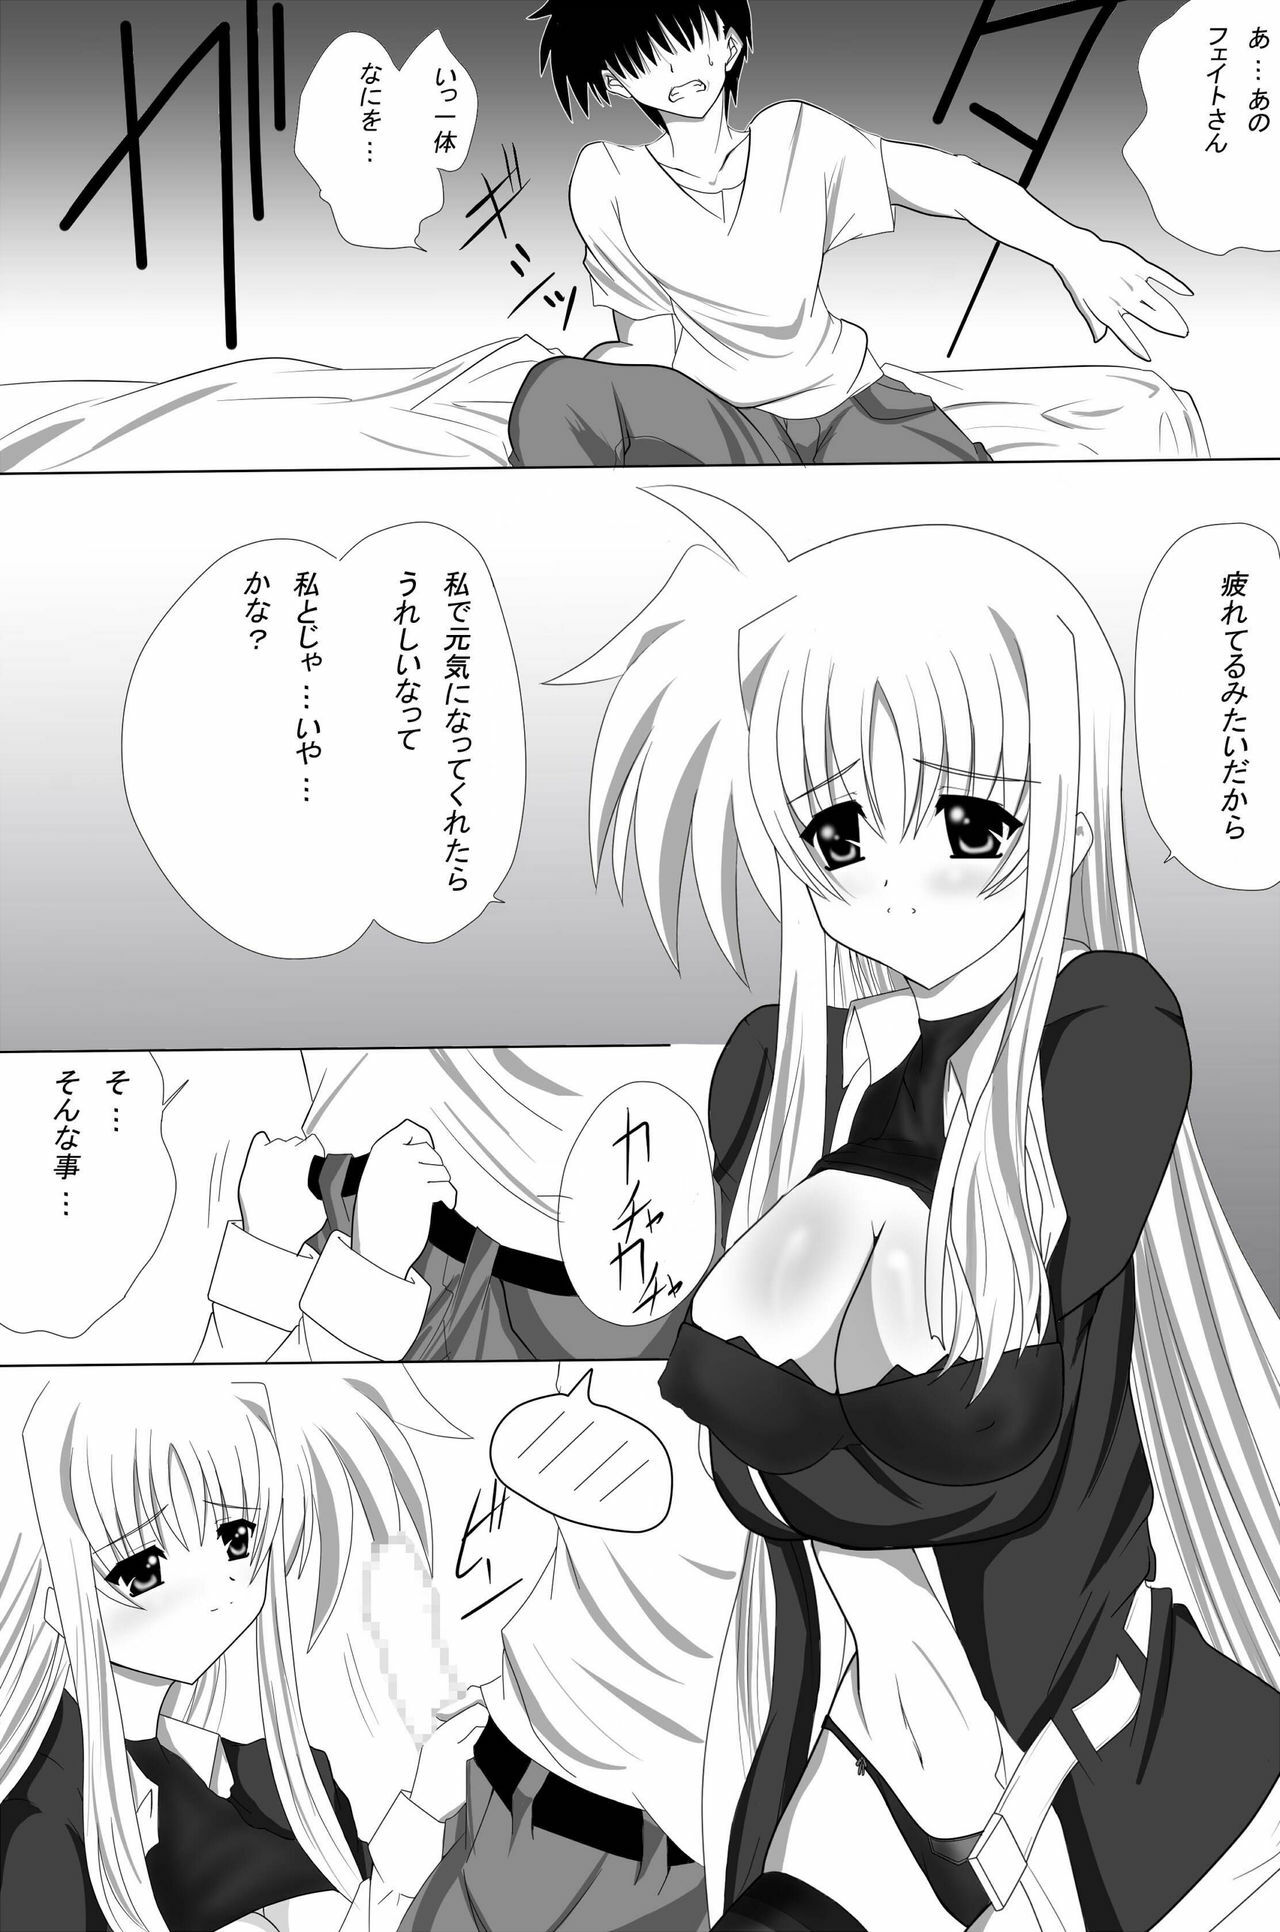 (CT16) [Nekoya (Kuon Kyoushirou)] Fate Salaclously (Mahou Shoujo Lyrical Nanoha) page 5 full